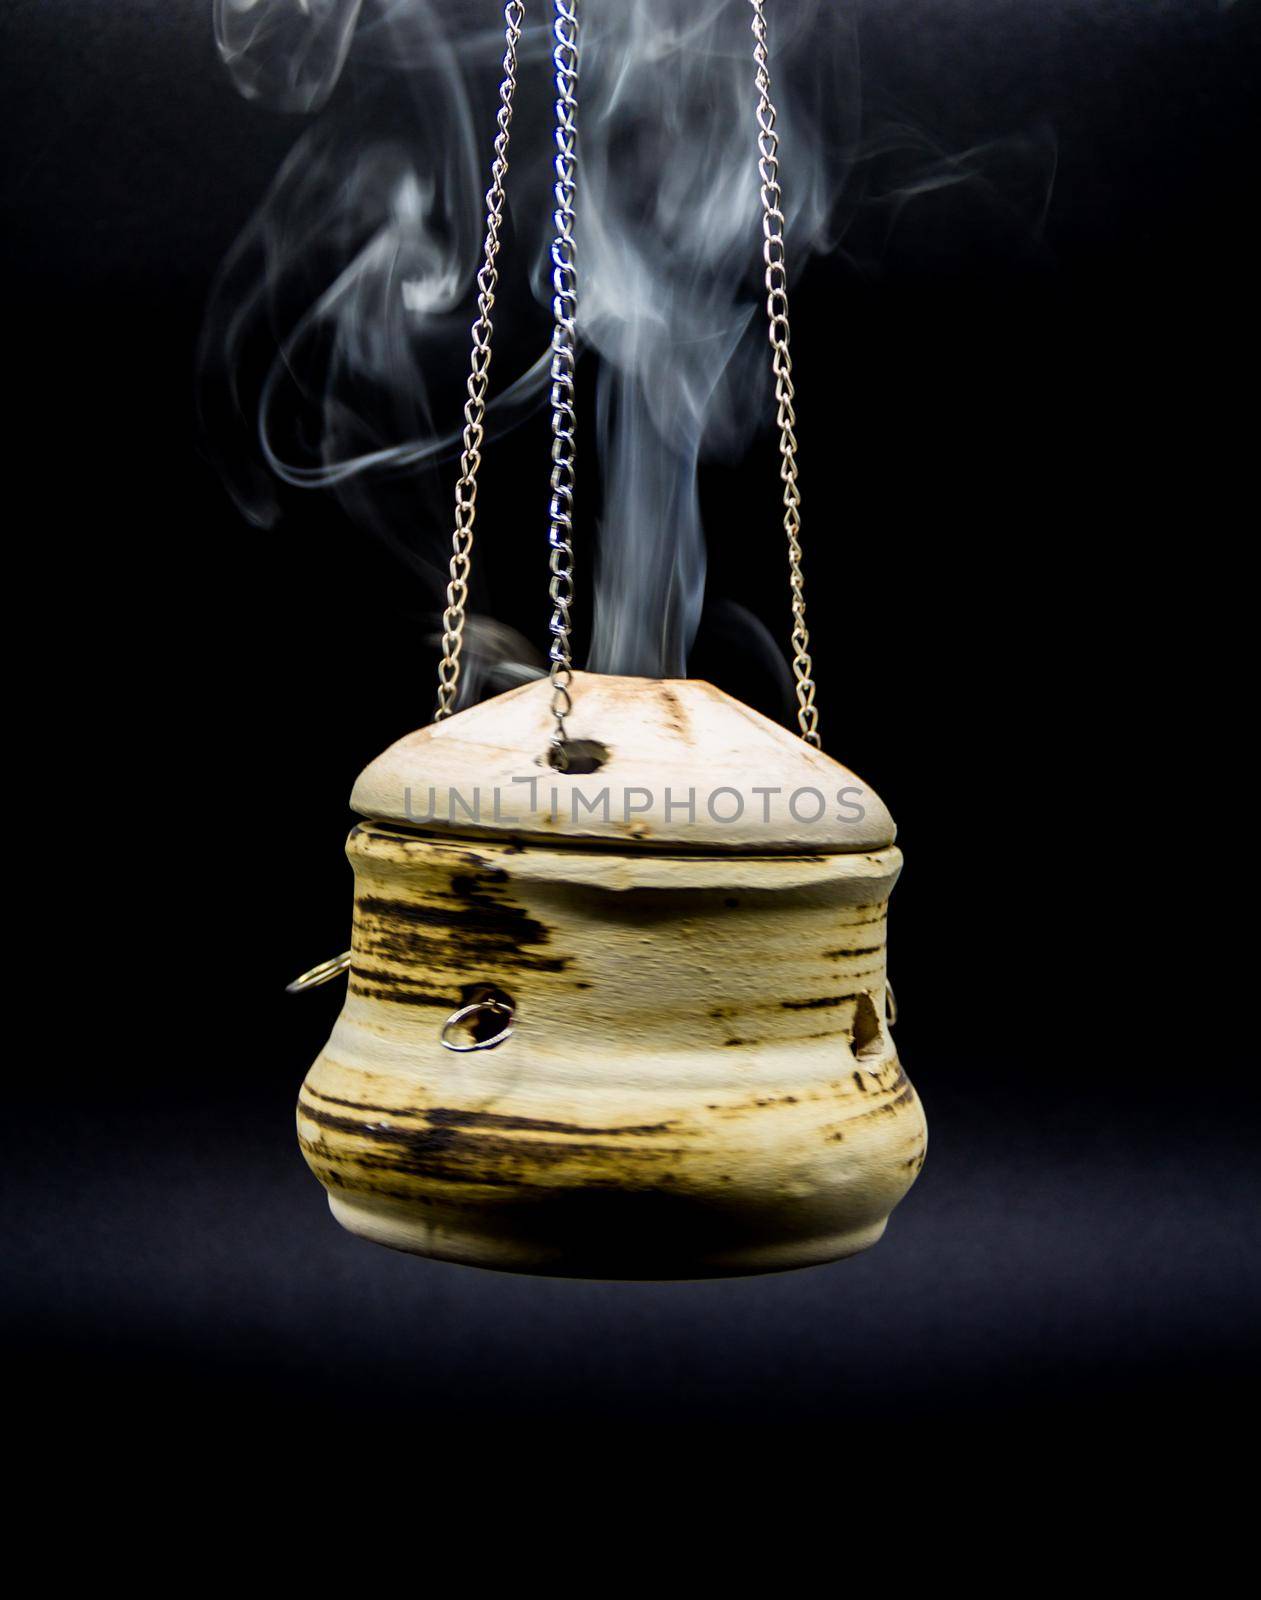 bowl of incense hanging smoke on black background